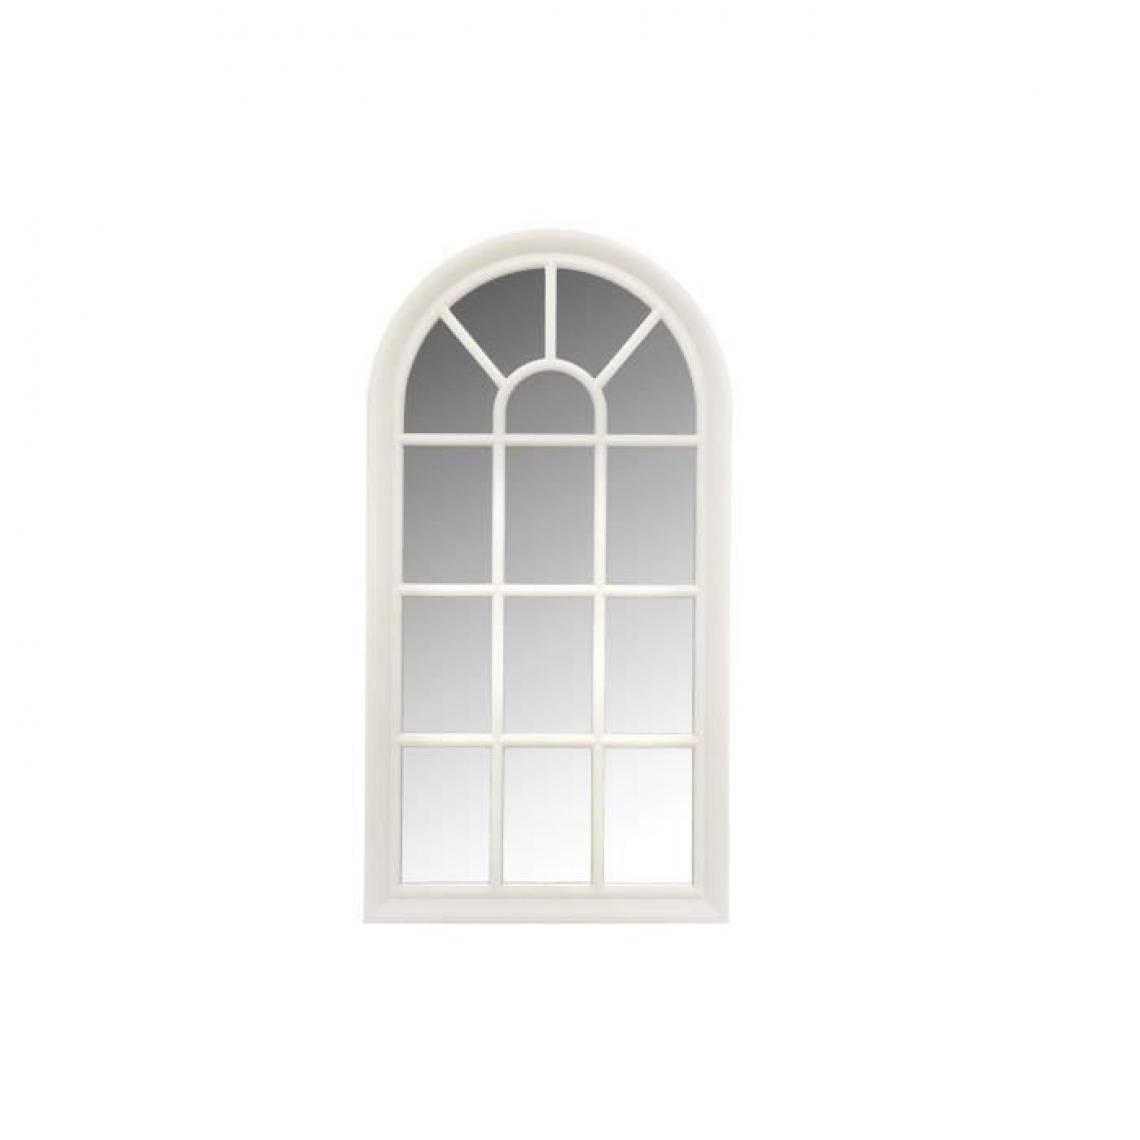 Cstore - Miroir fenetre arrondie - 71x36 cm - Blanc - Miroirs